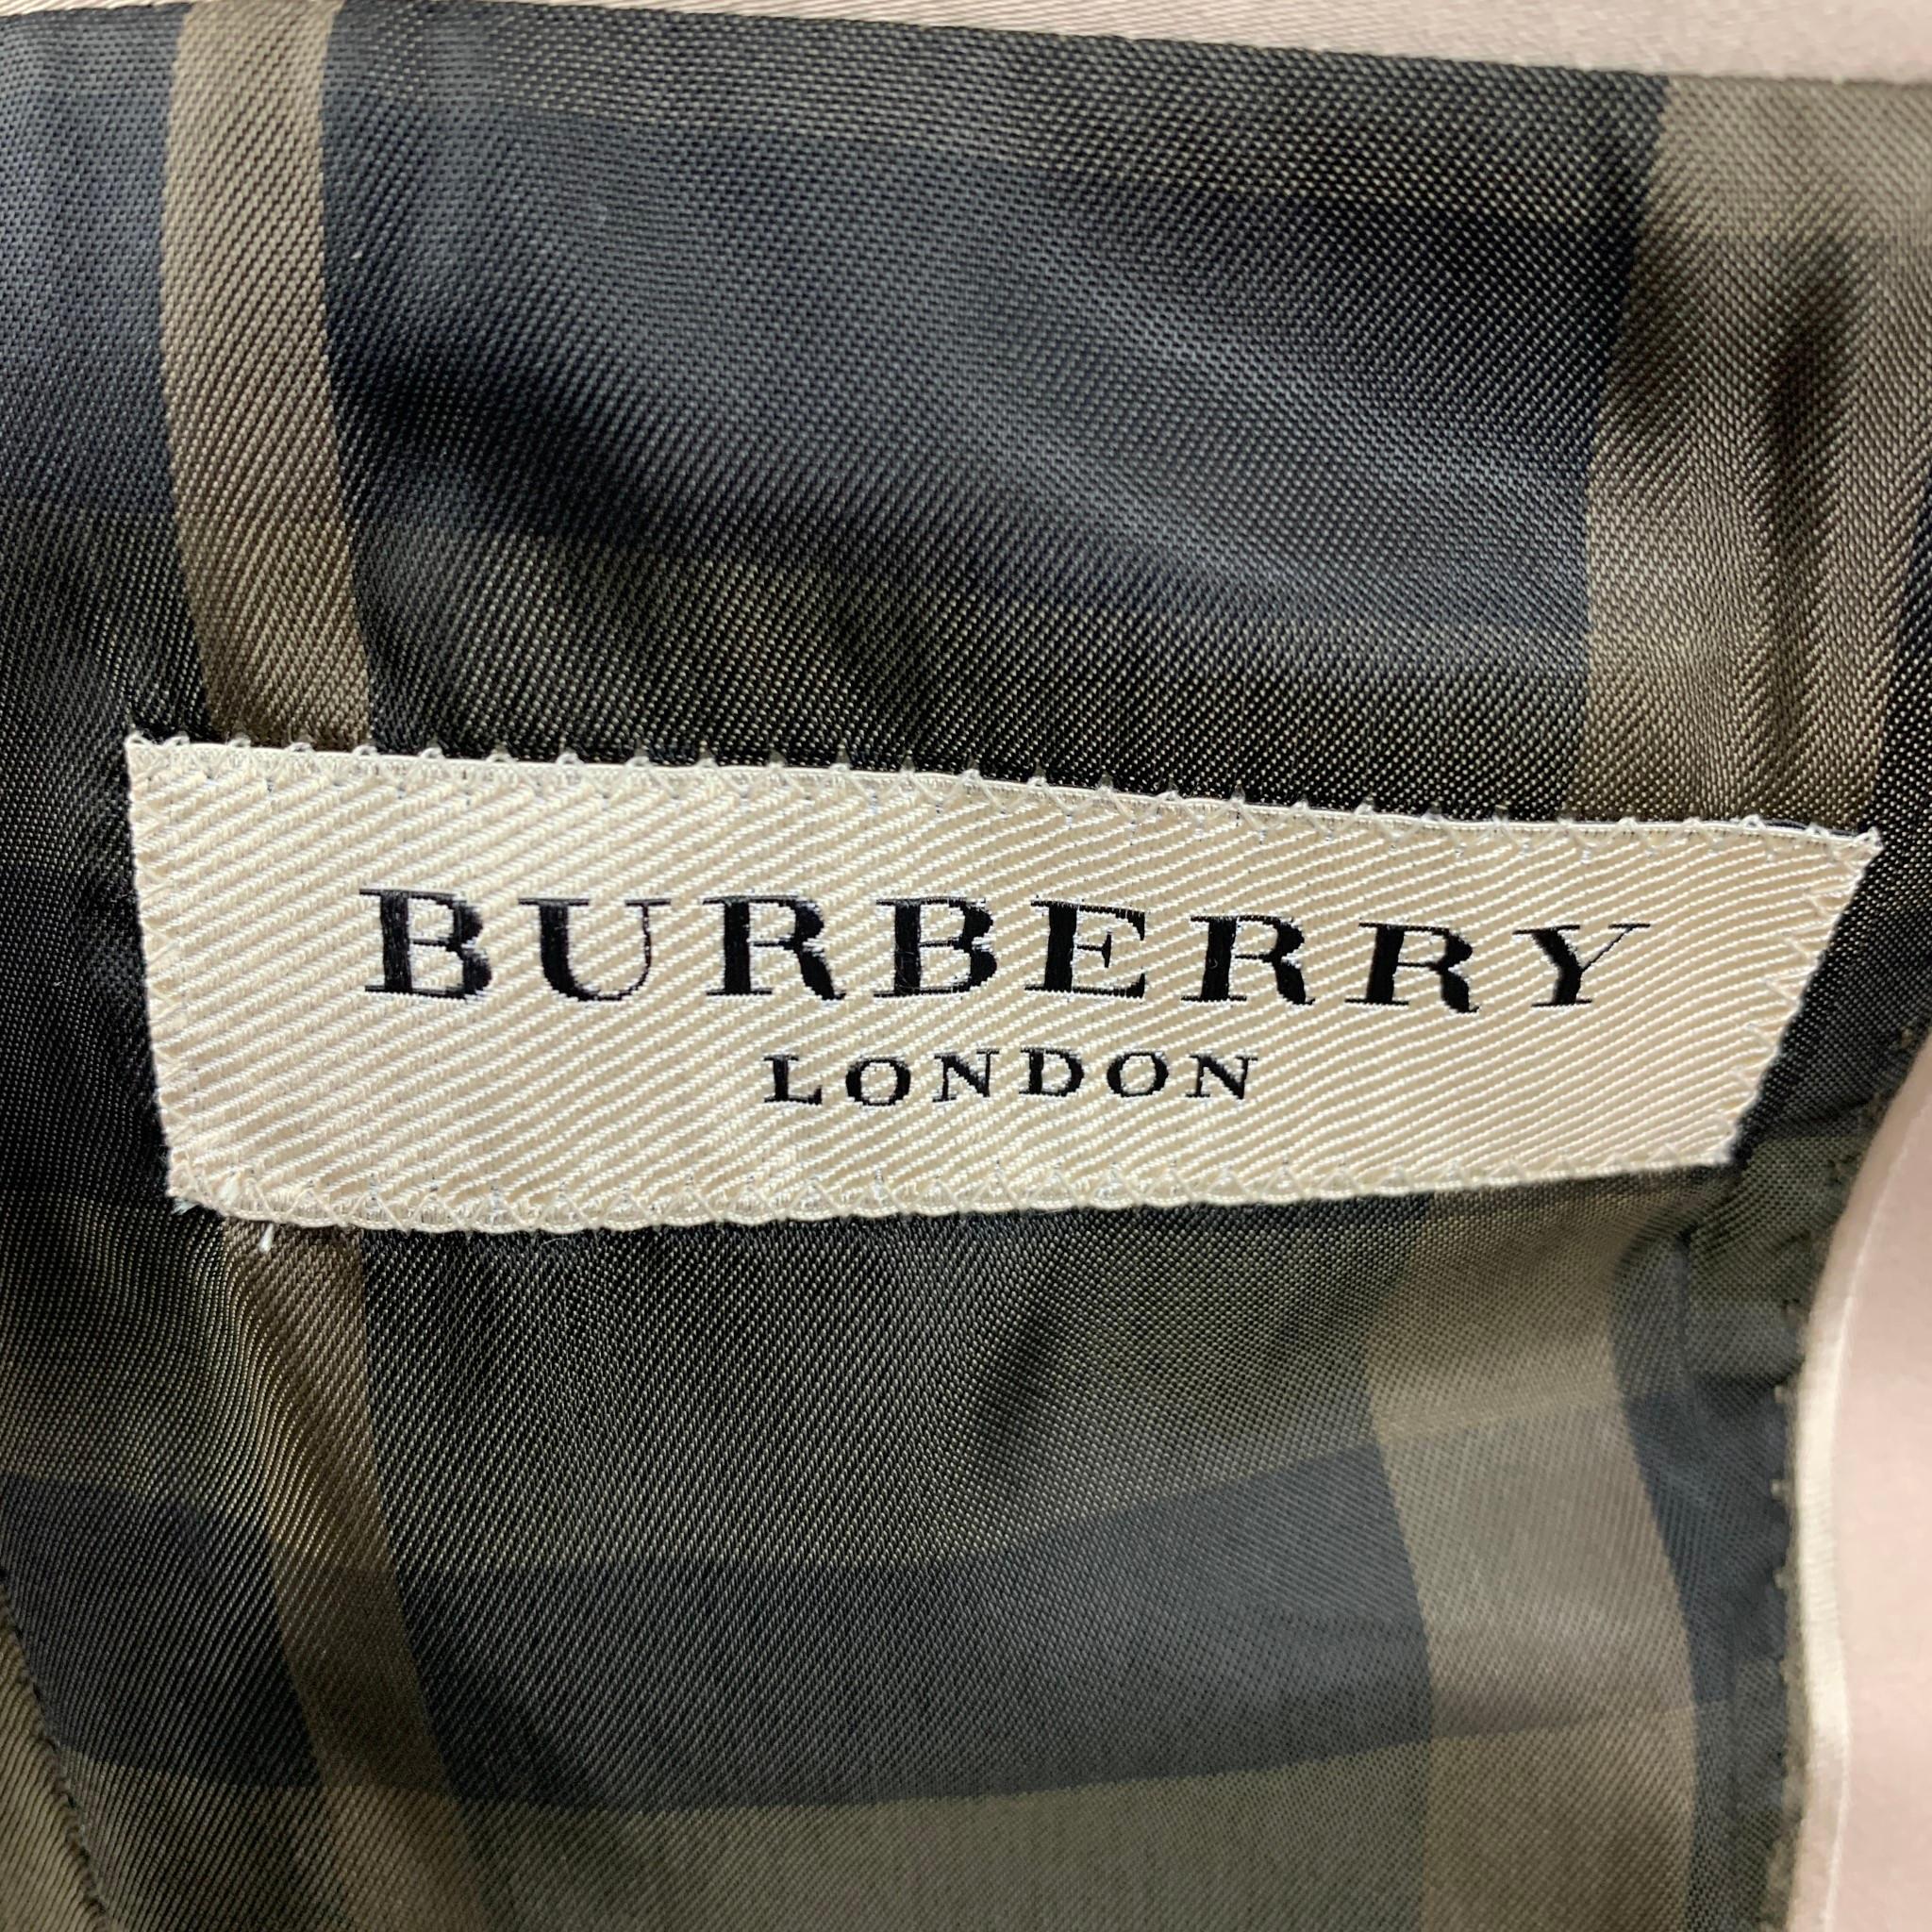 BURBERRY LONDON Size 36 Beige Cotton Notch Lapel Suit 1